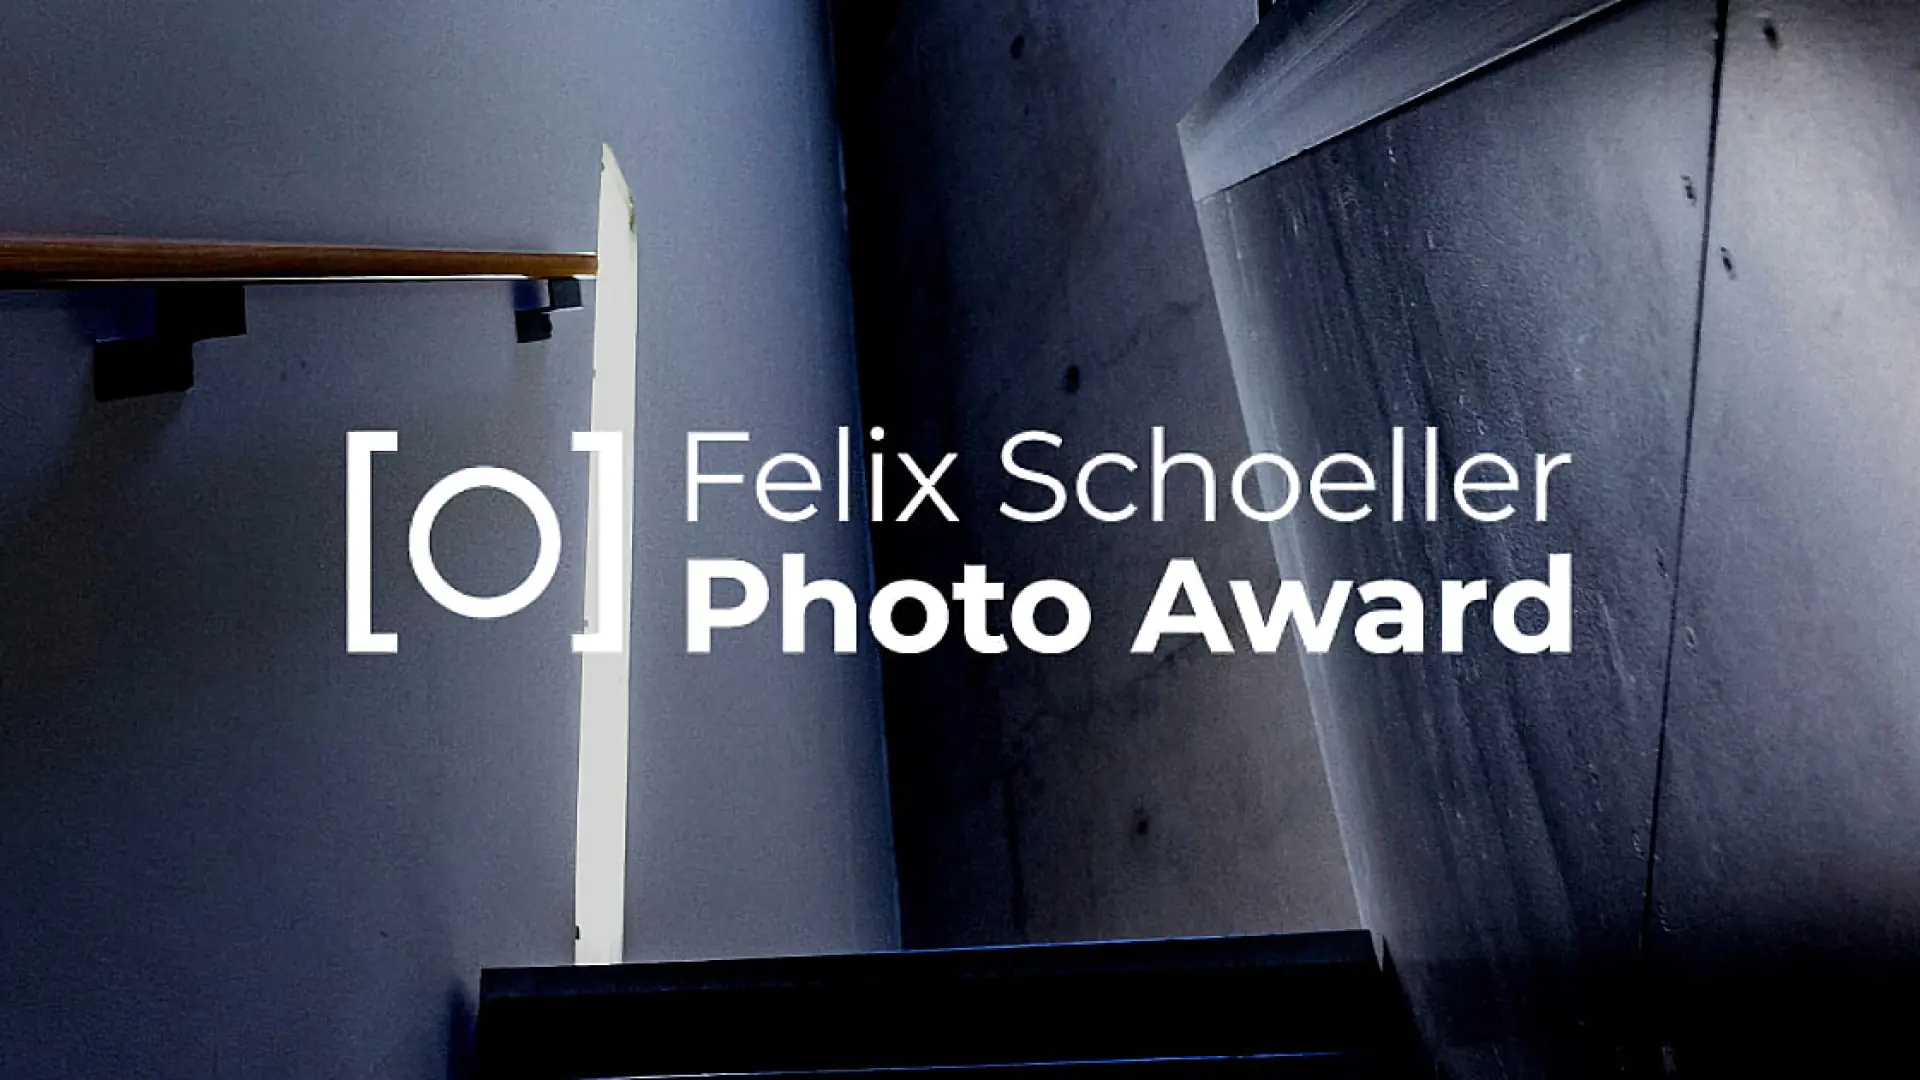 Felix Schoeller Photo Award 2023 — professional va endi o'sib kelayotgan fotograflar uchun xalqaro tanlov; €5 000-€10 000 pul mukofoti taqdim etiladi